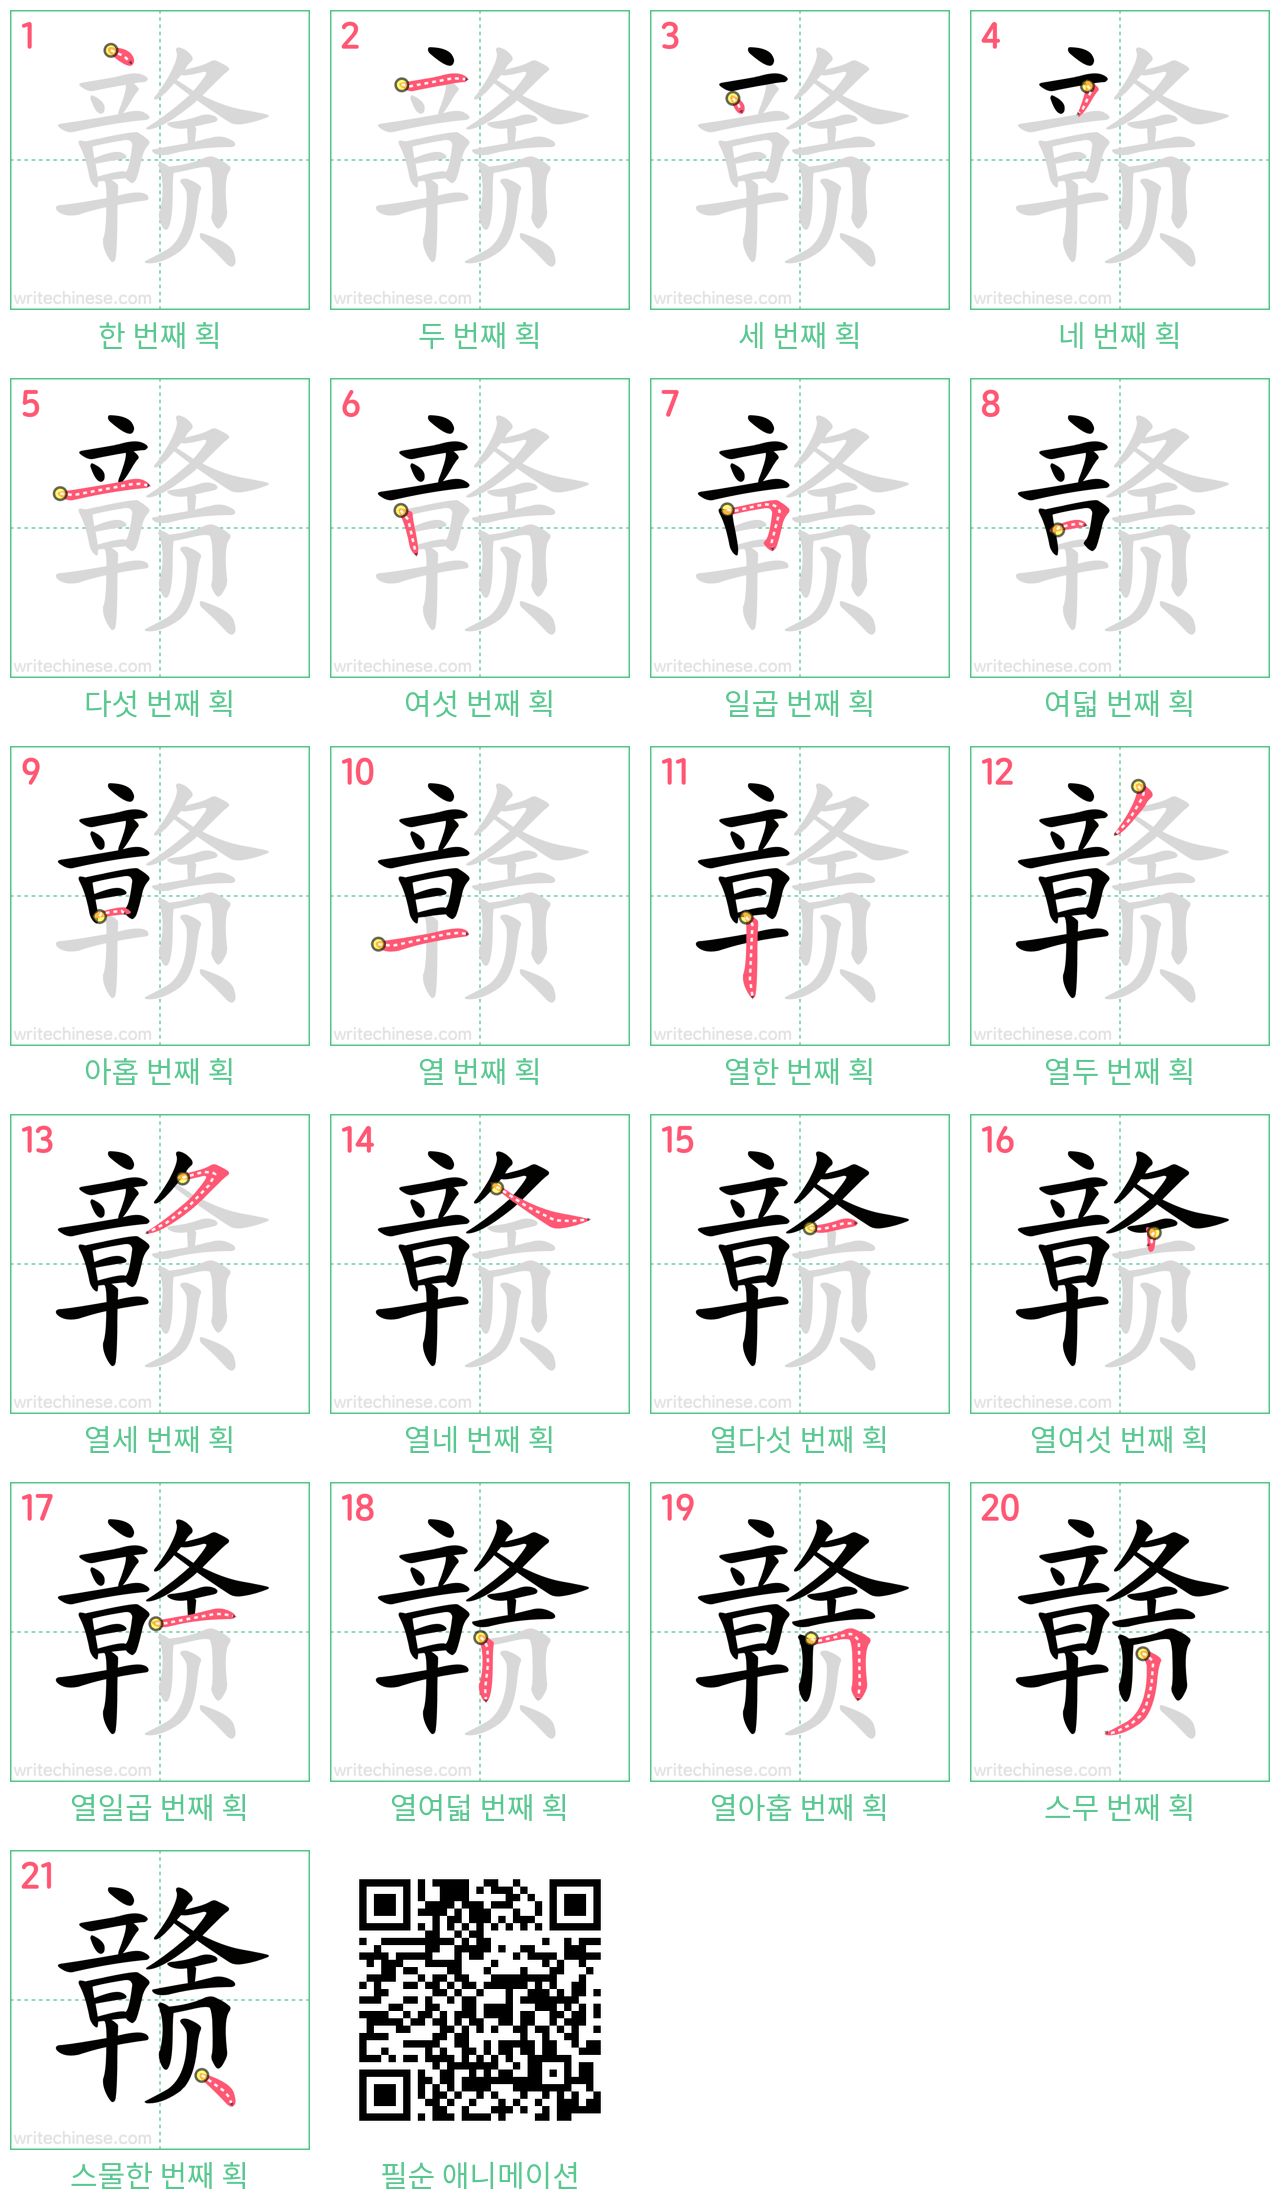 赣 step-by-step stroke order diagrams